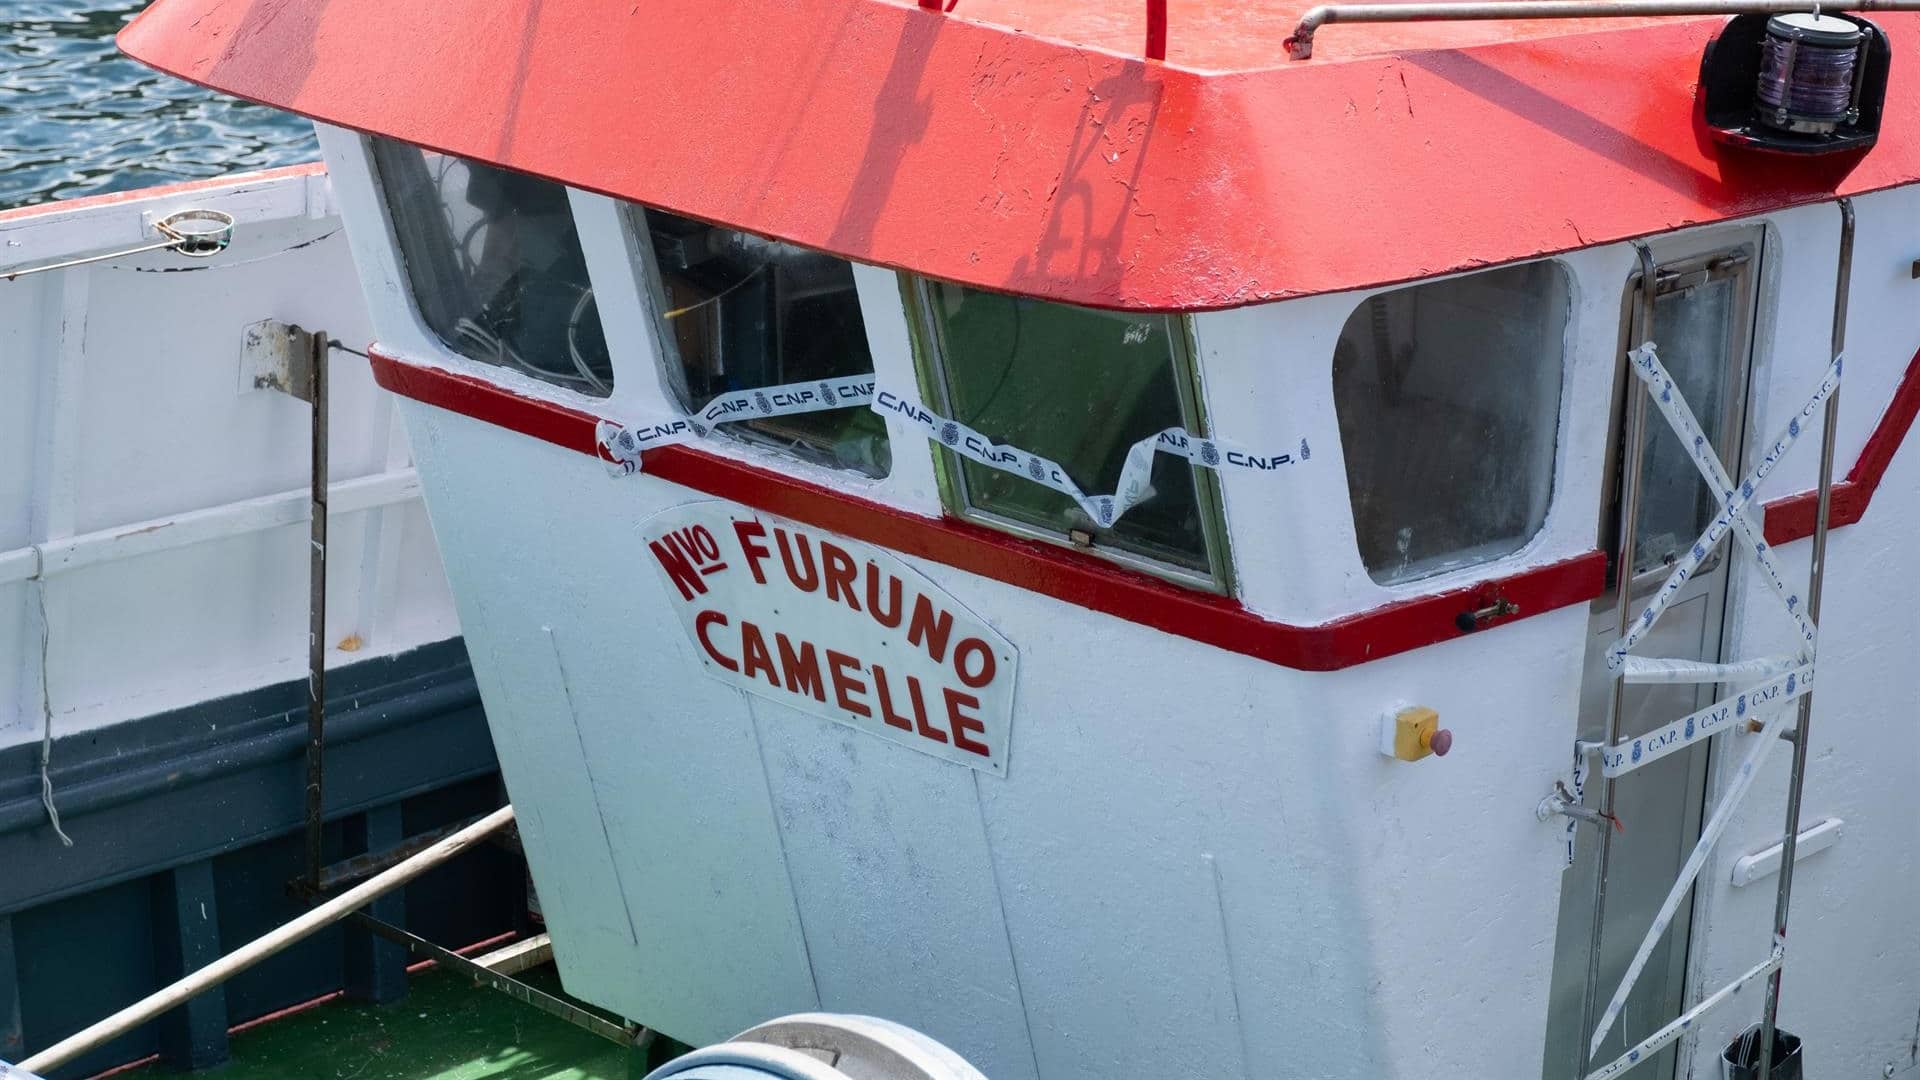 El "Nuevo Furuno", el barco donde se encontró un alijo de 1.400 kilos de cocaína en Camelle, en Camariñas | EP